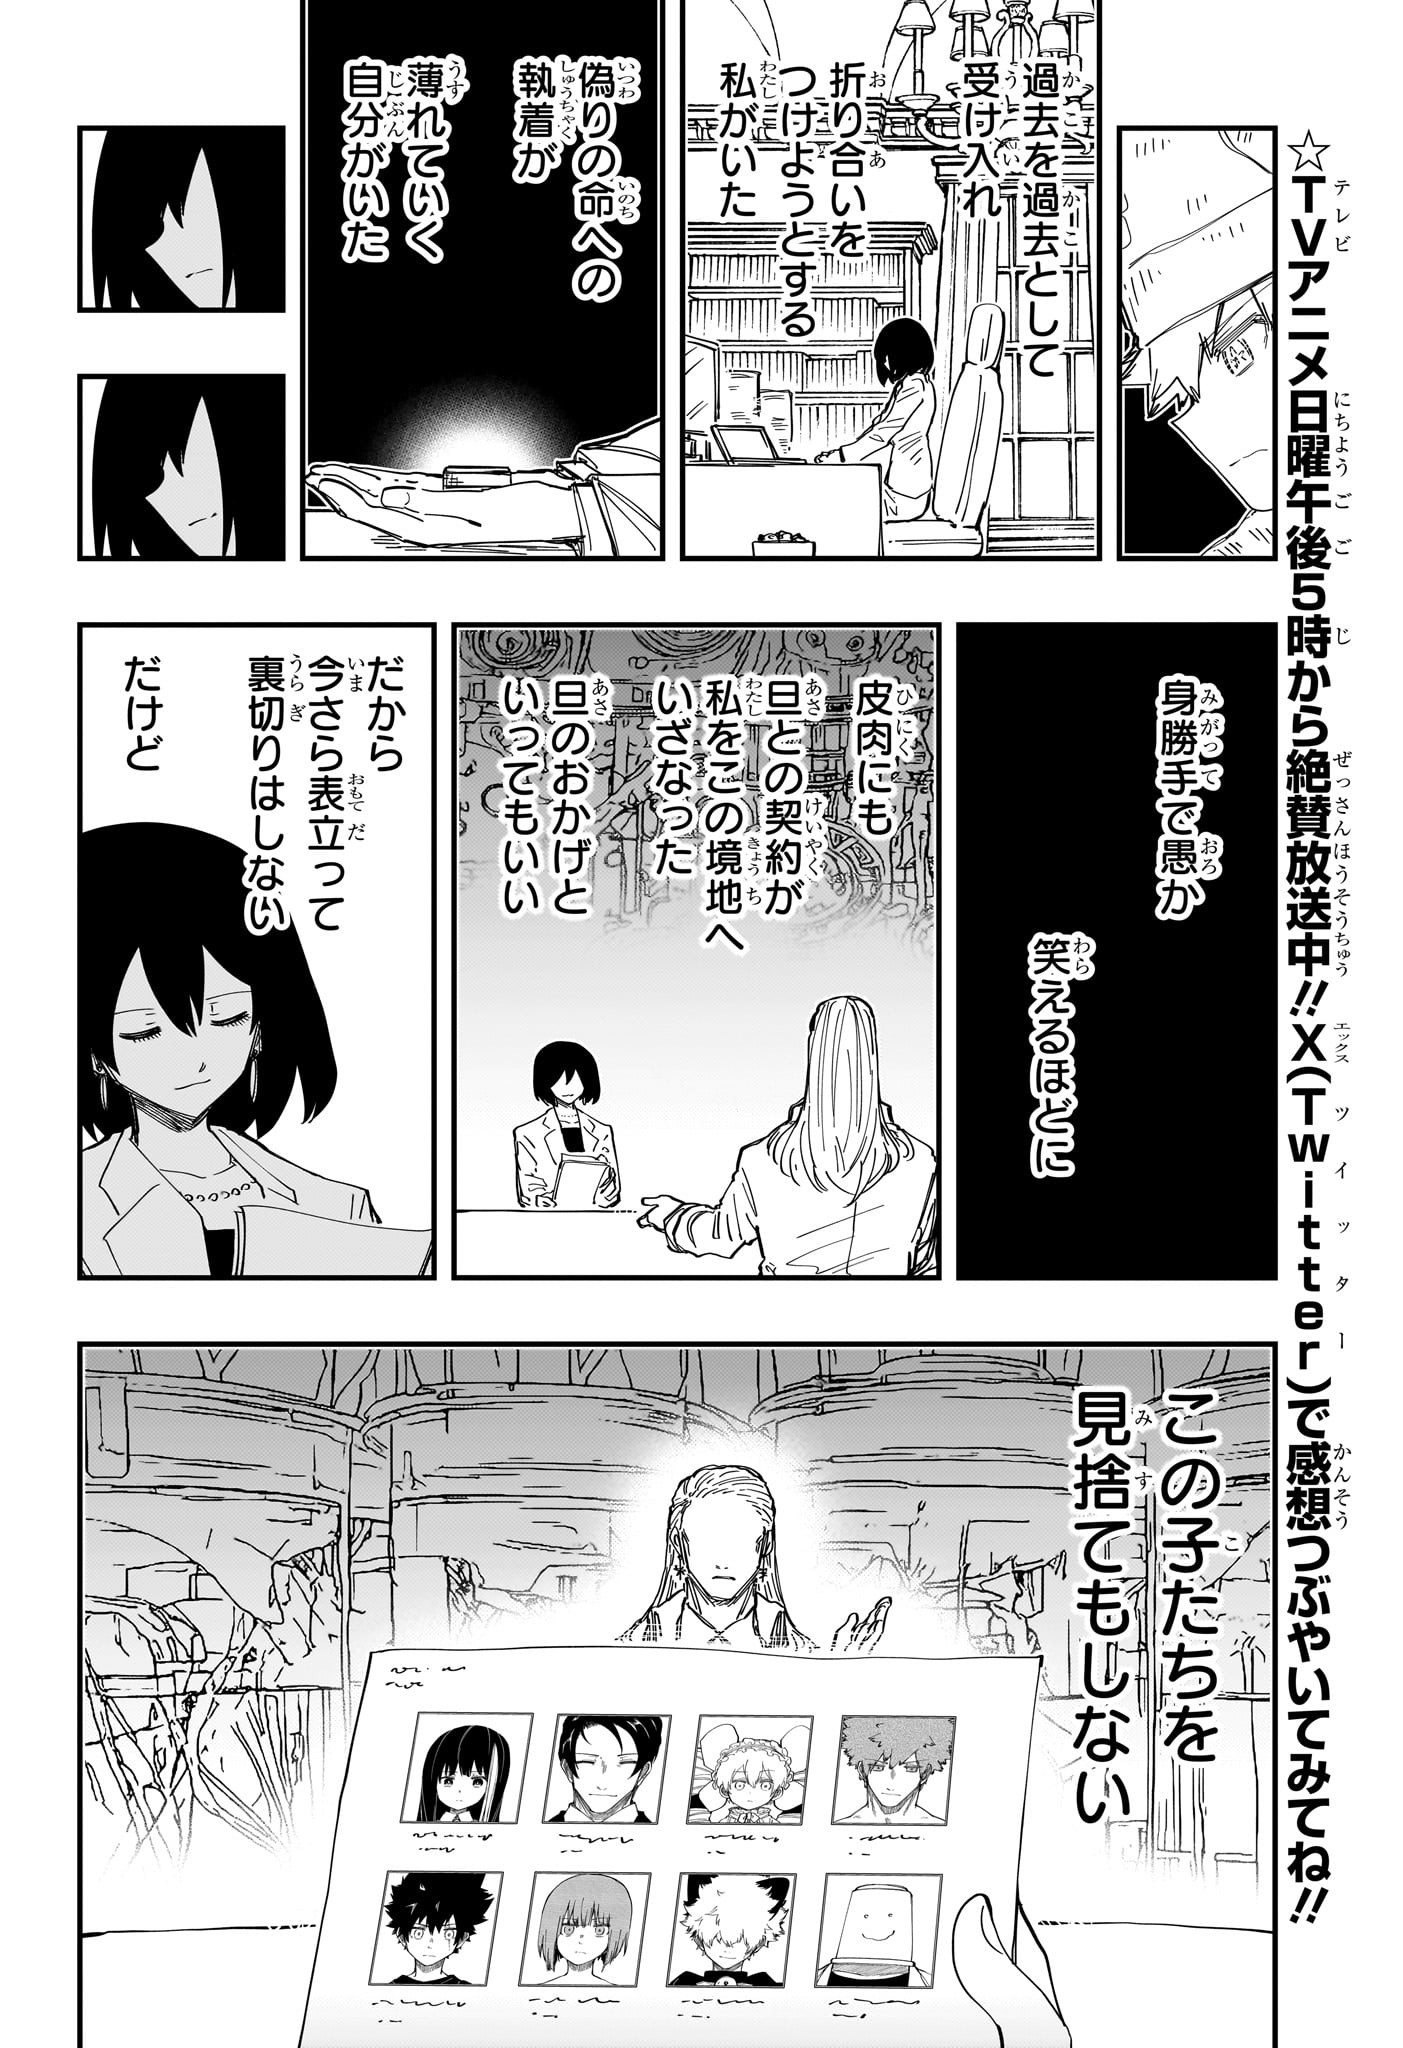 Yozakura-san Chi no Daisakusen - Chapter 234 - Page 4